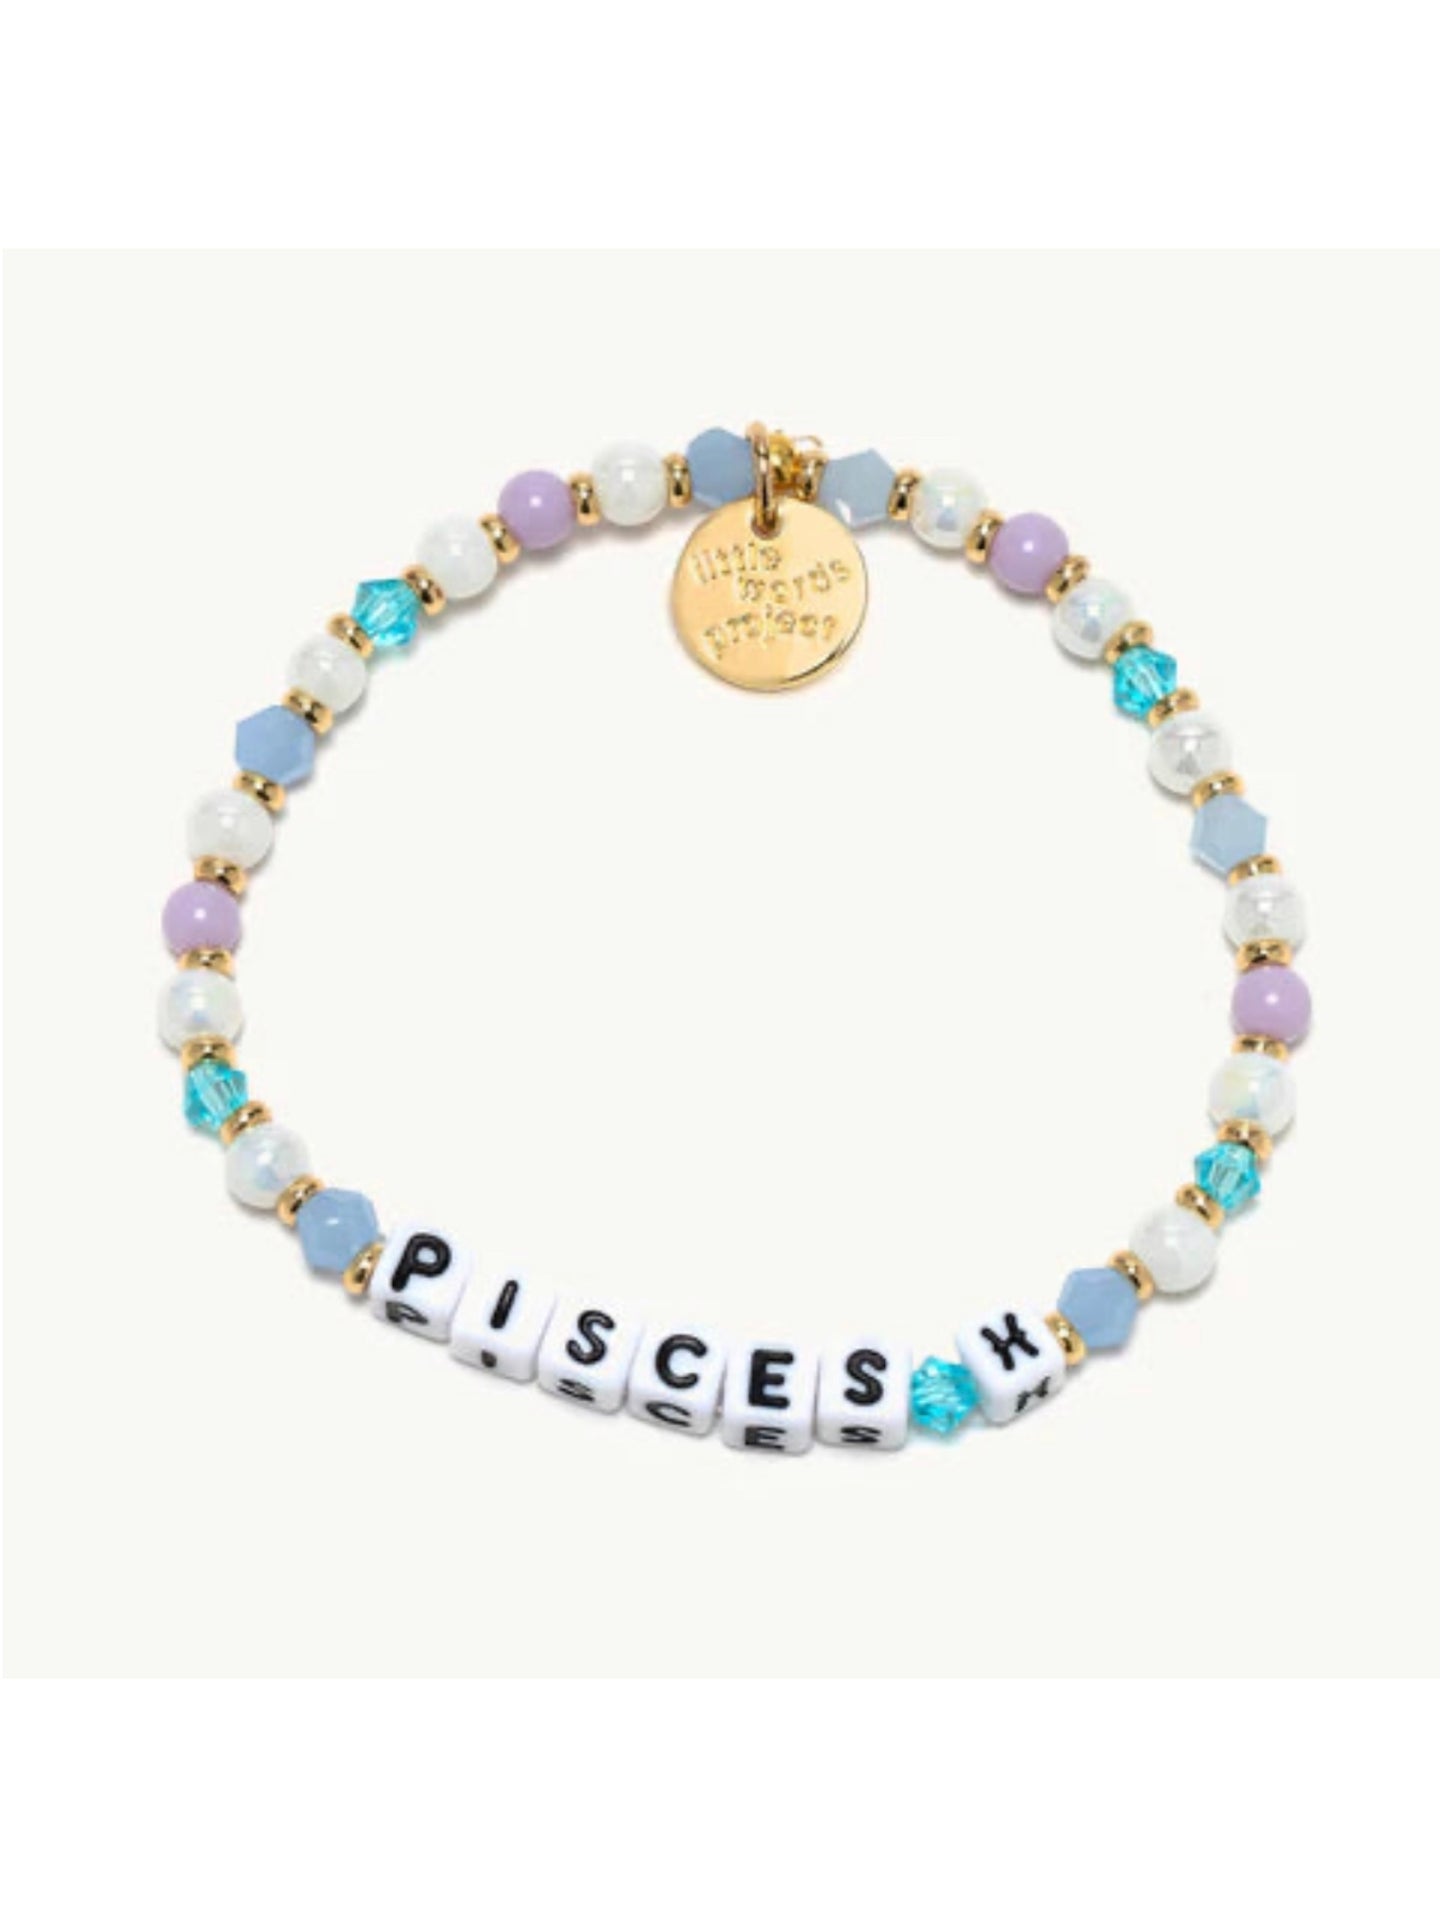 Little Words Project Pisces Bracelet